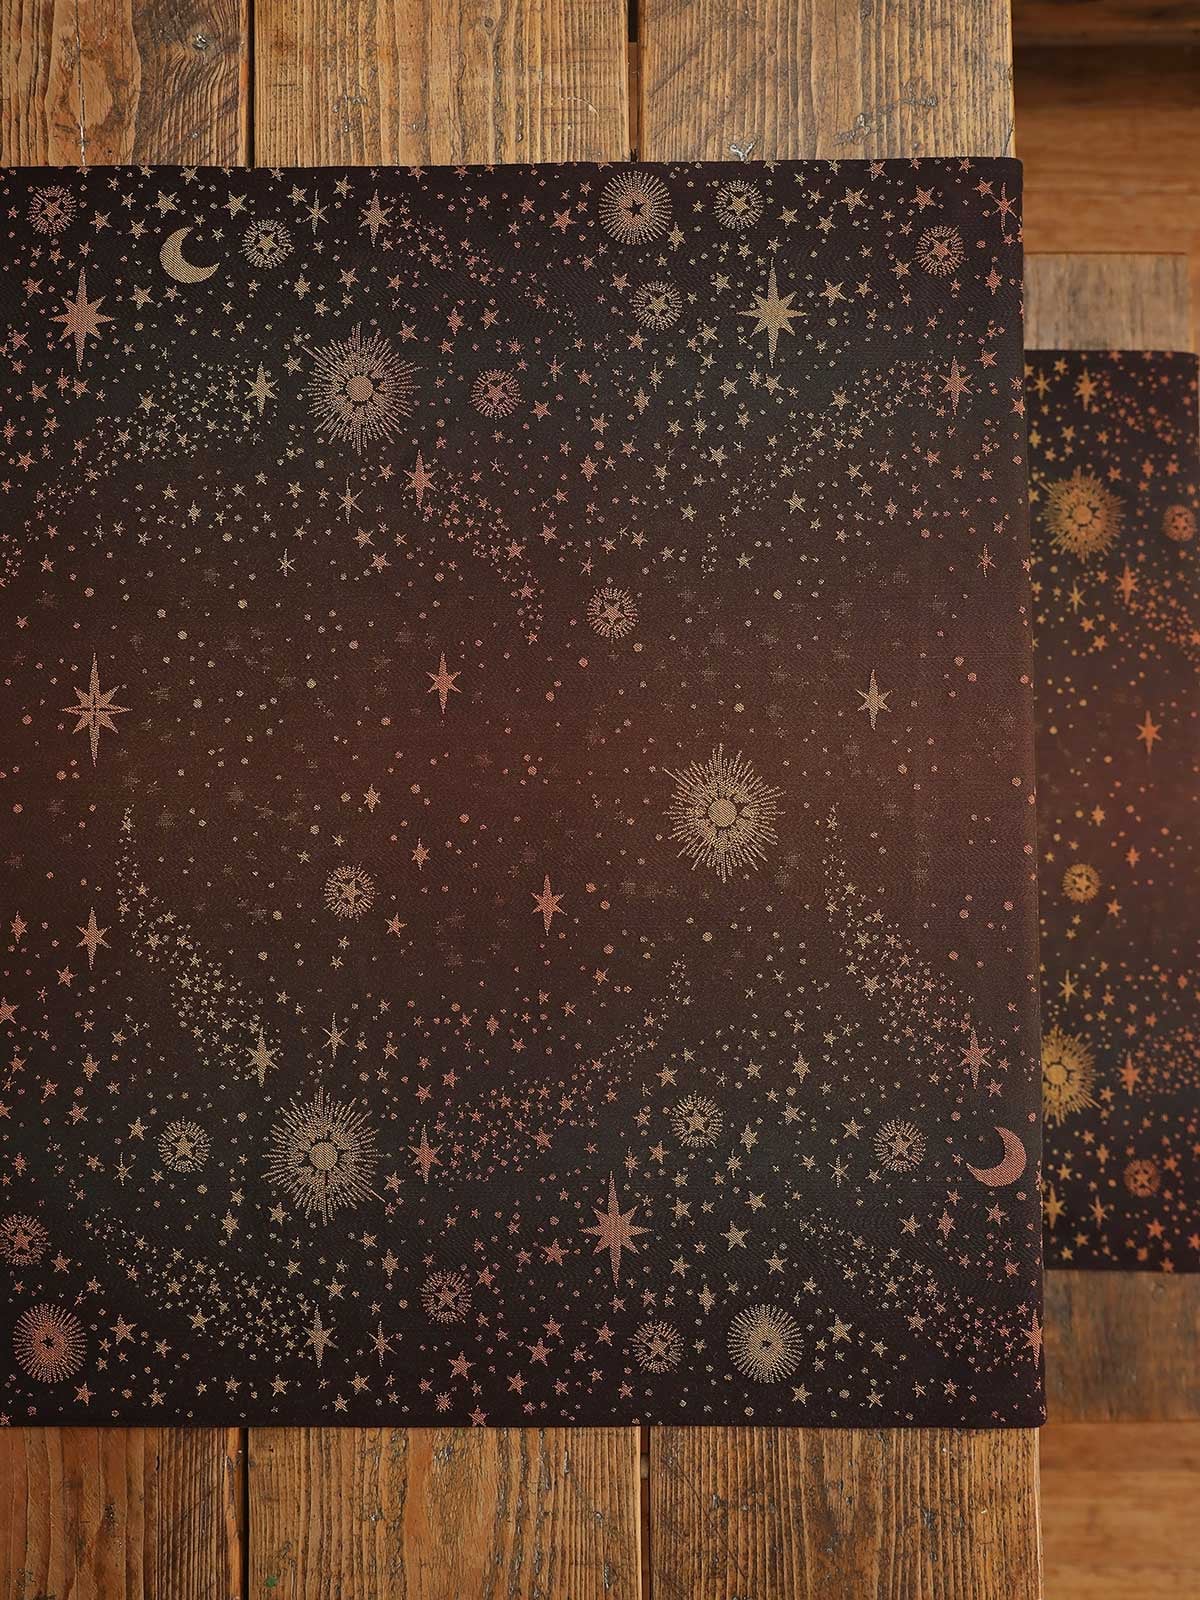 Tragetuch Oscha Constellation Interstellar Dust   Image